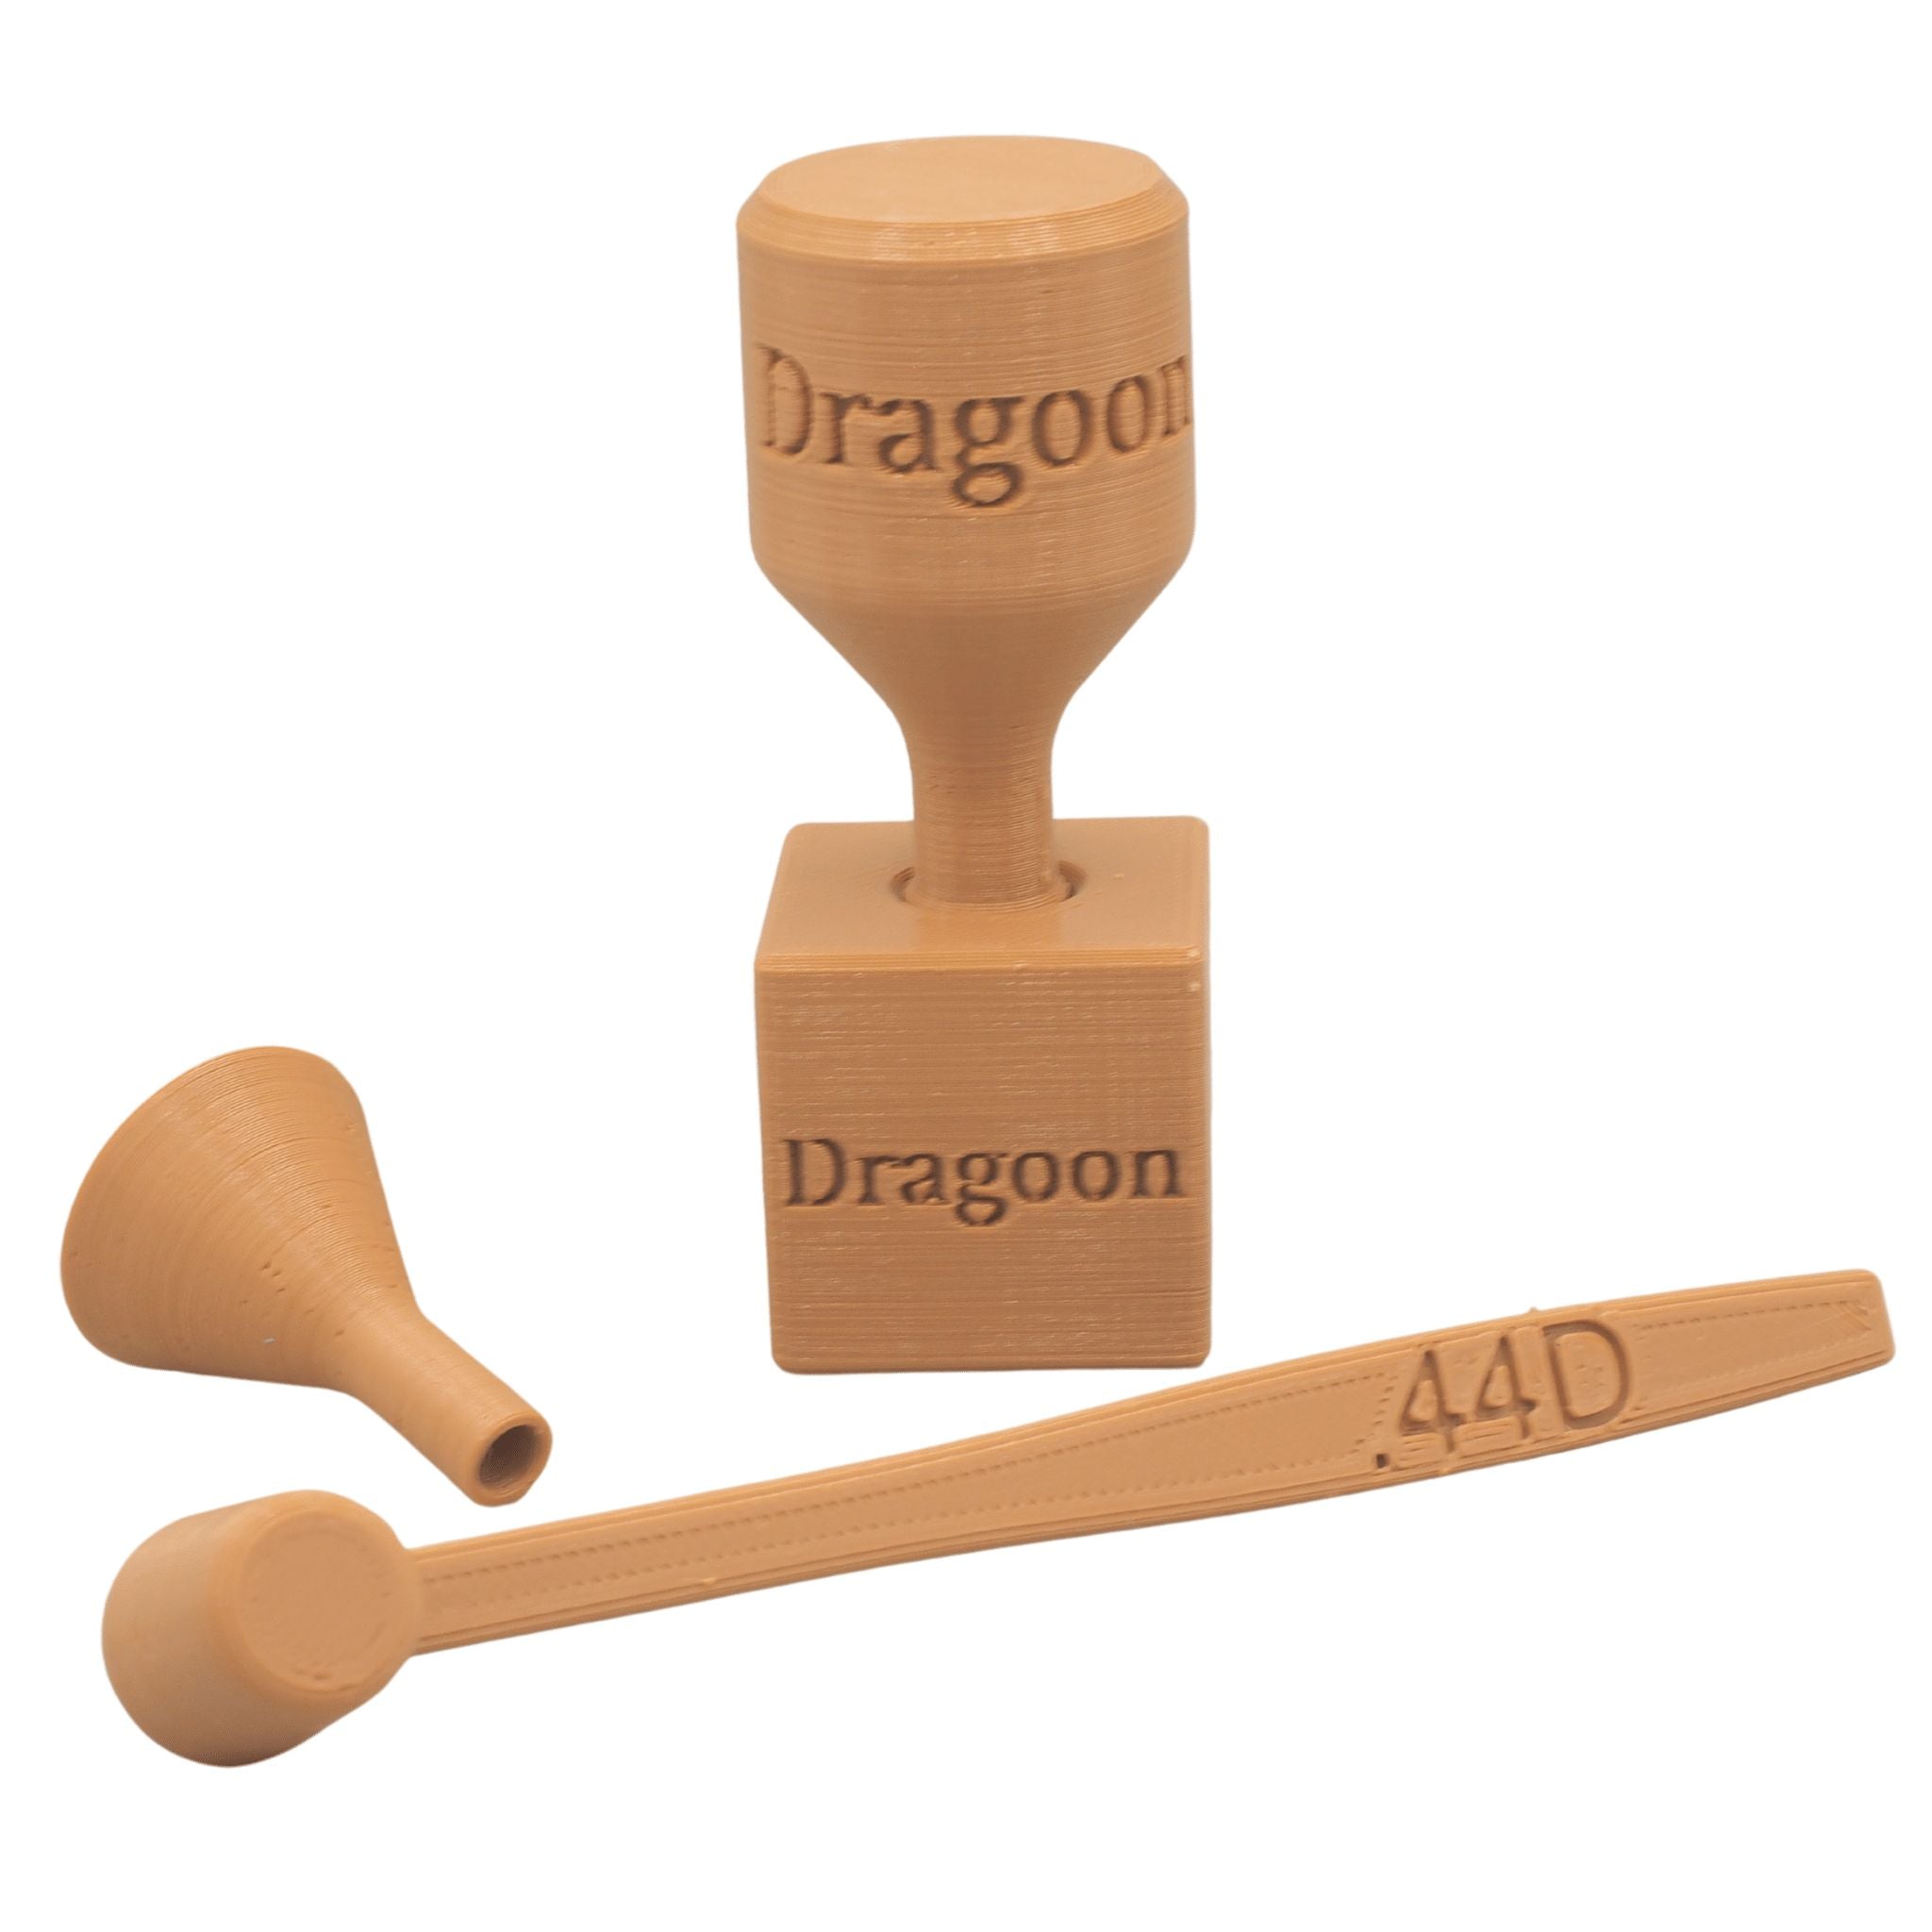 Dragoon Paper Cartridge Former Basic Kit